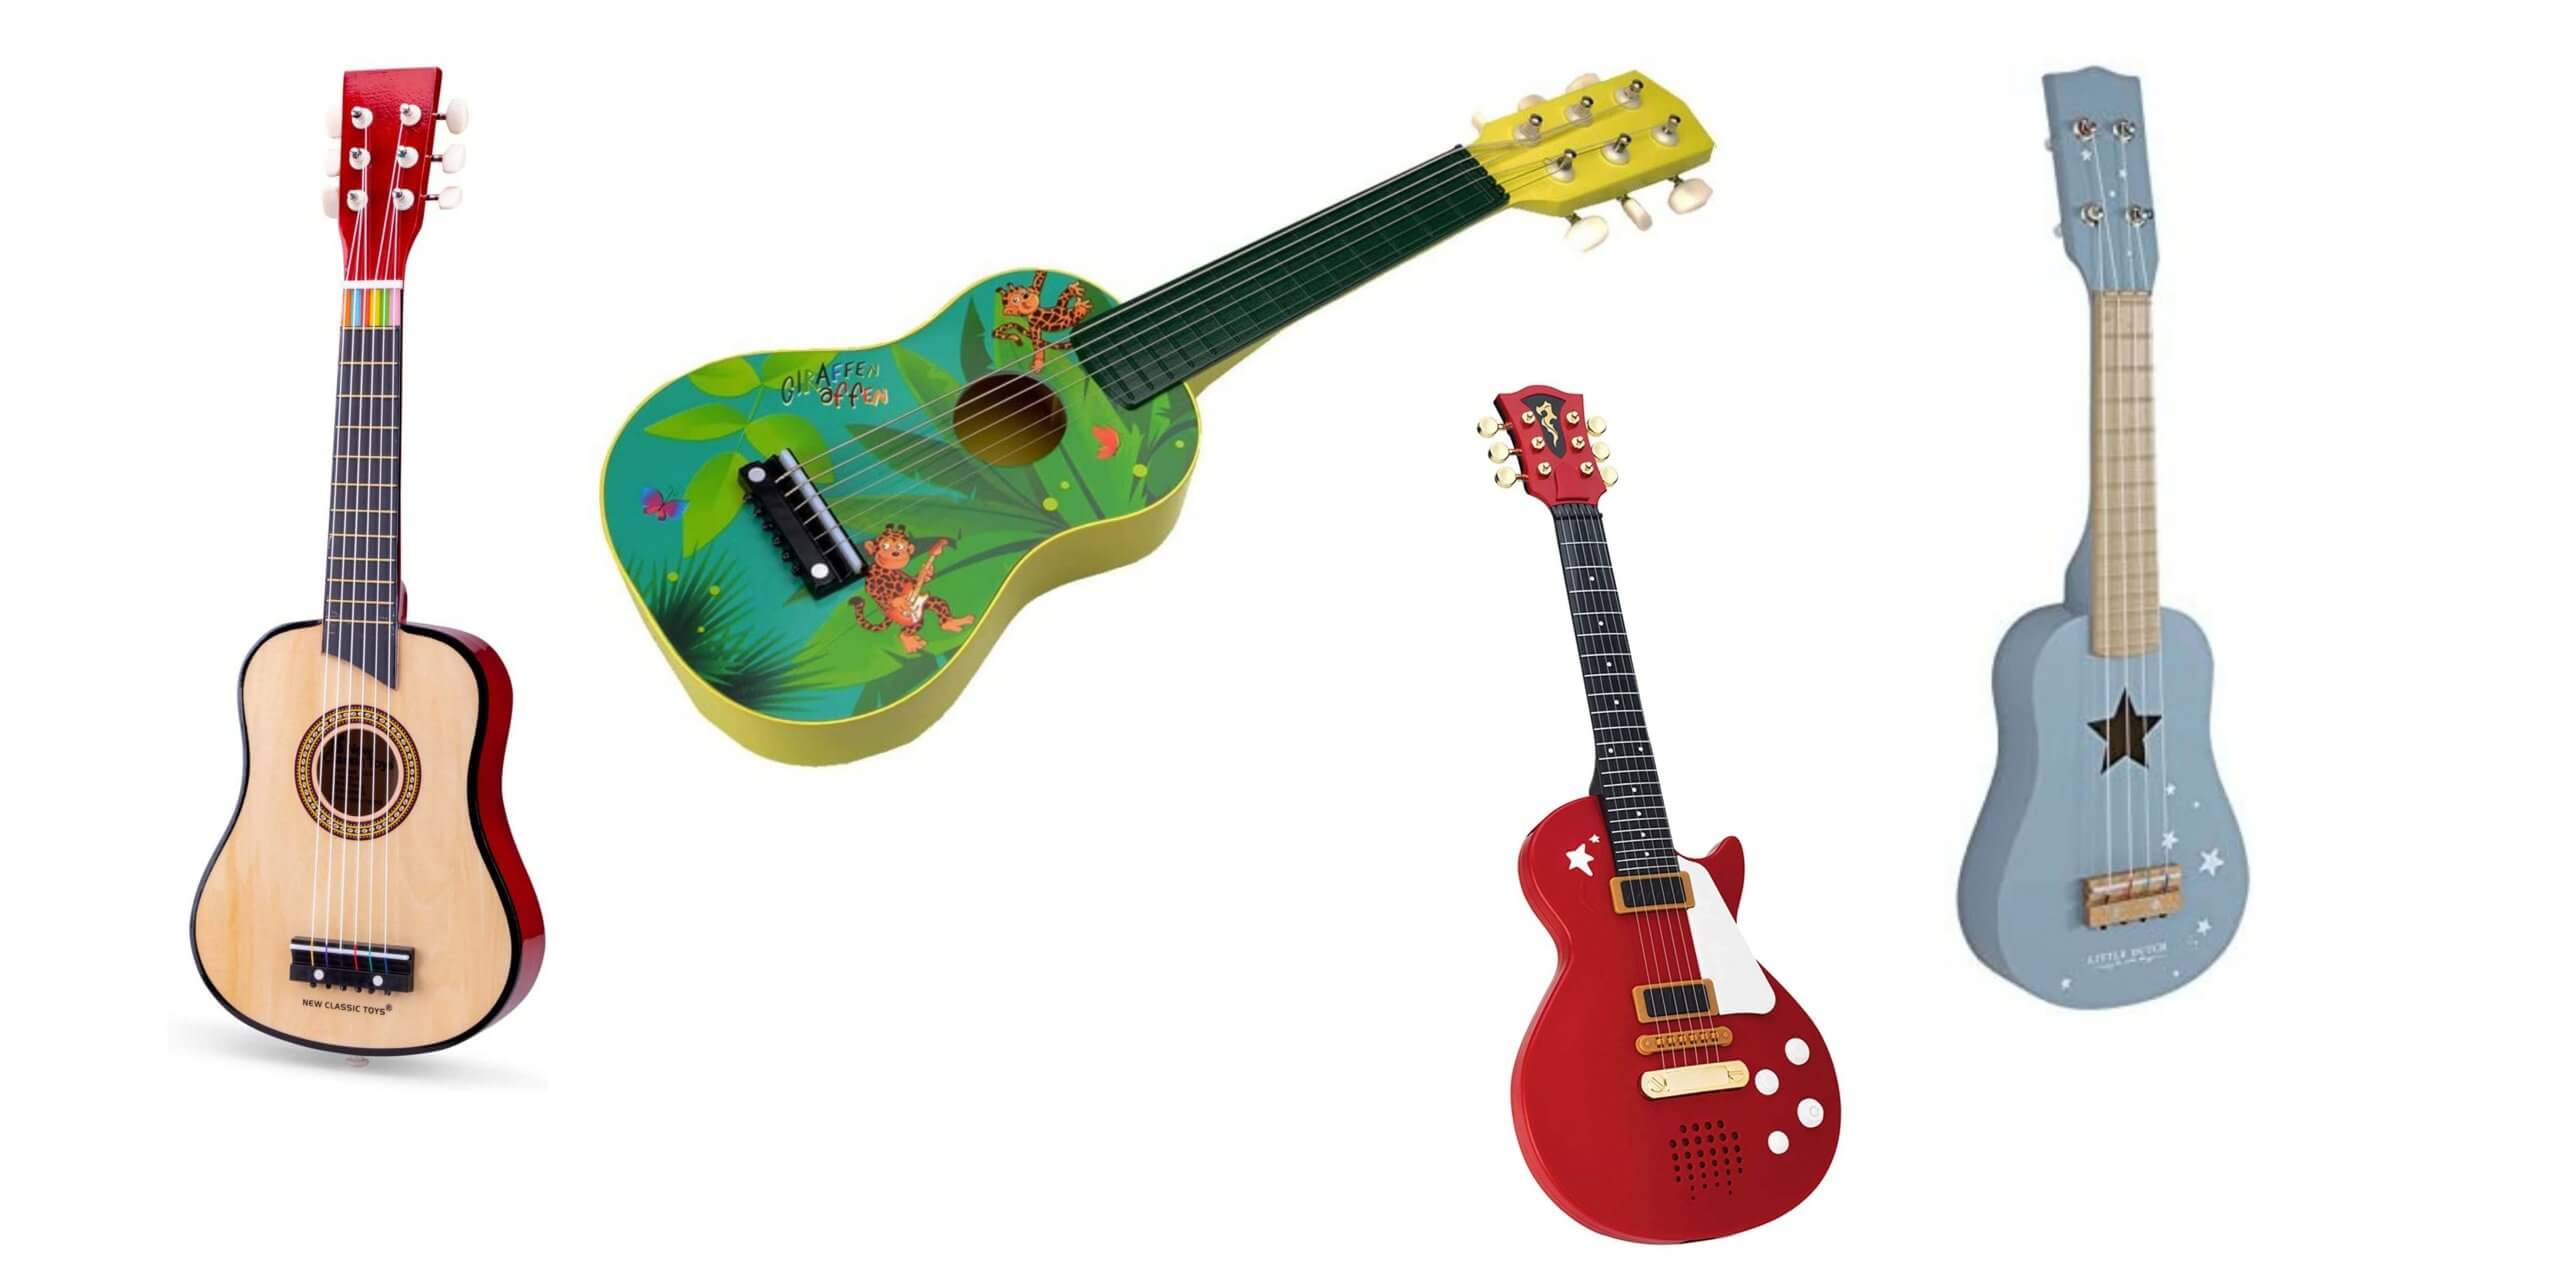 Blau Pädagogisches Lernspielzeug für Anfänger Mädchen Jungen Geburtstag Weihnachten WEY&FLY Kinder Spielzeug Gitarre fördert Musikfähigkeit 6 Saiten erste Musikinstrument